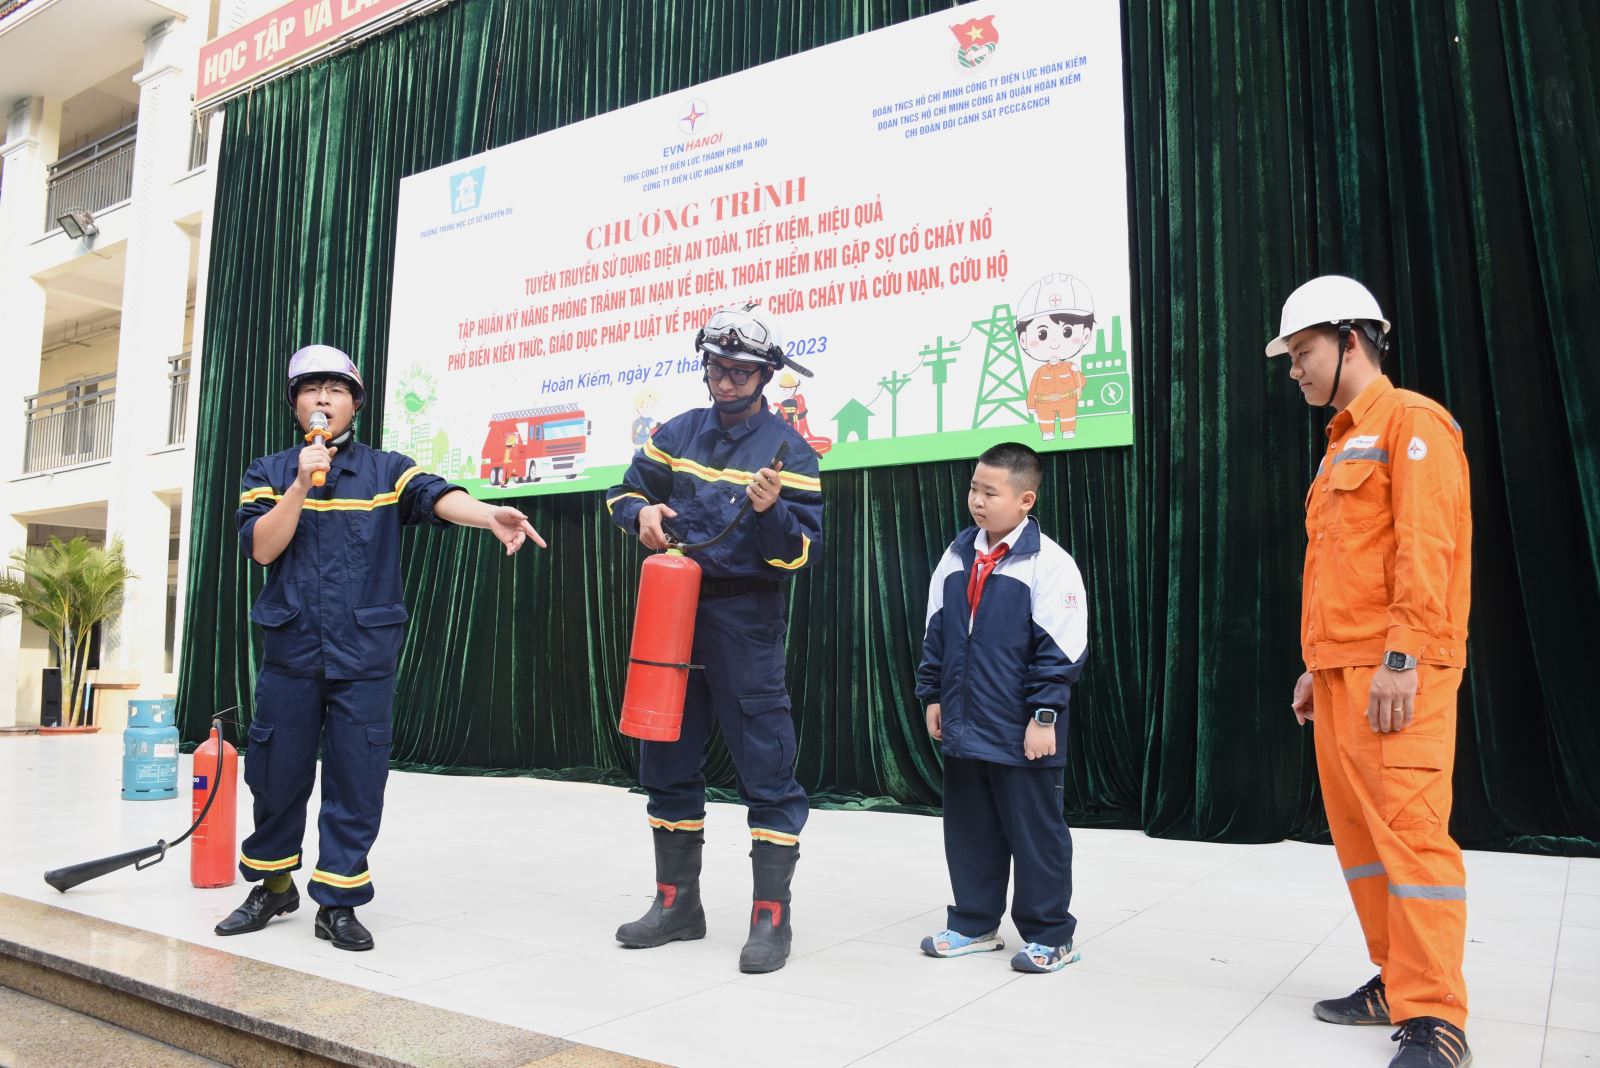 Công ty Điện lực Hoàn Kiếm đã phối hợp với Đội Cảnh sát PCCC&CNCH - Công an quận Hoàn Kiếm tuyên truyền tại Trường THCS Nguyễn Du – Hoàn Kiếm, Hà Nội.